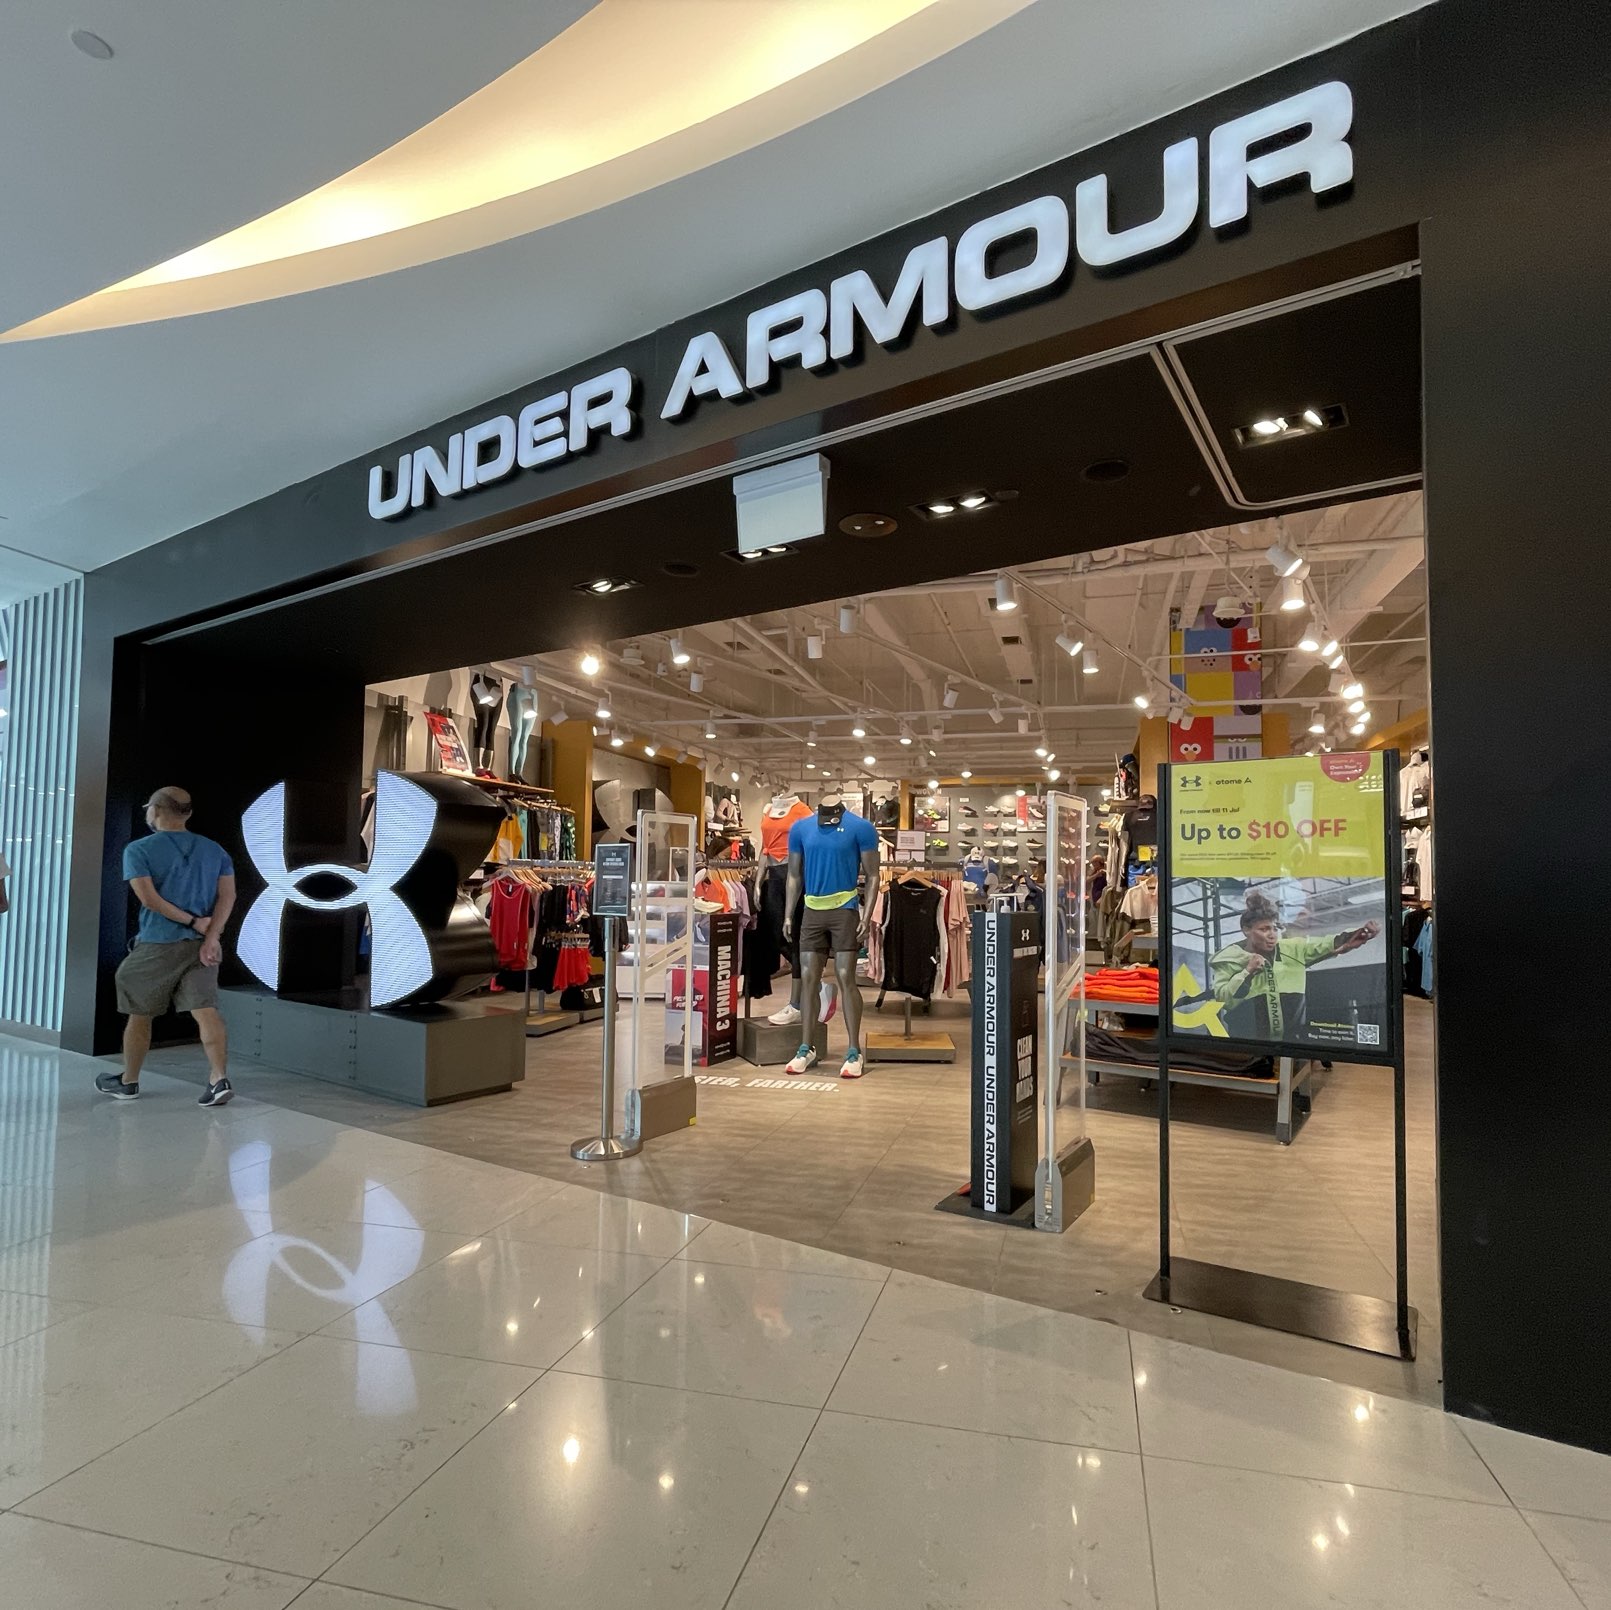 Under Armour | Trip.com Singapore